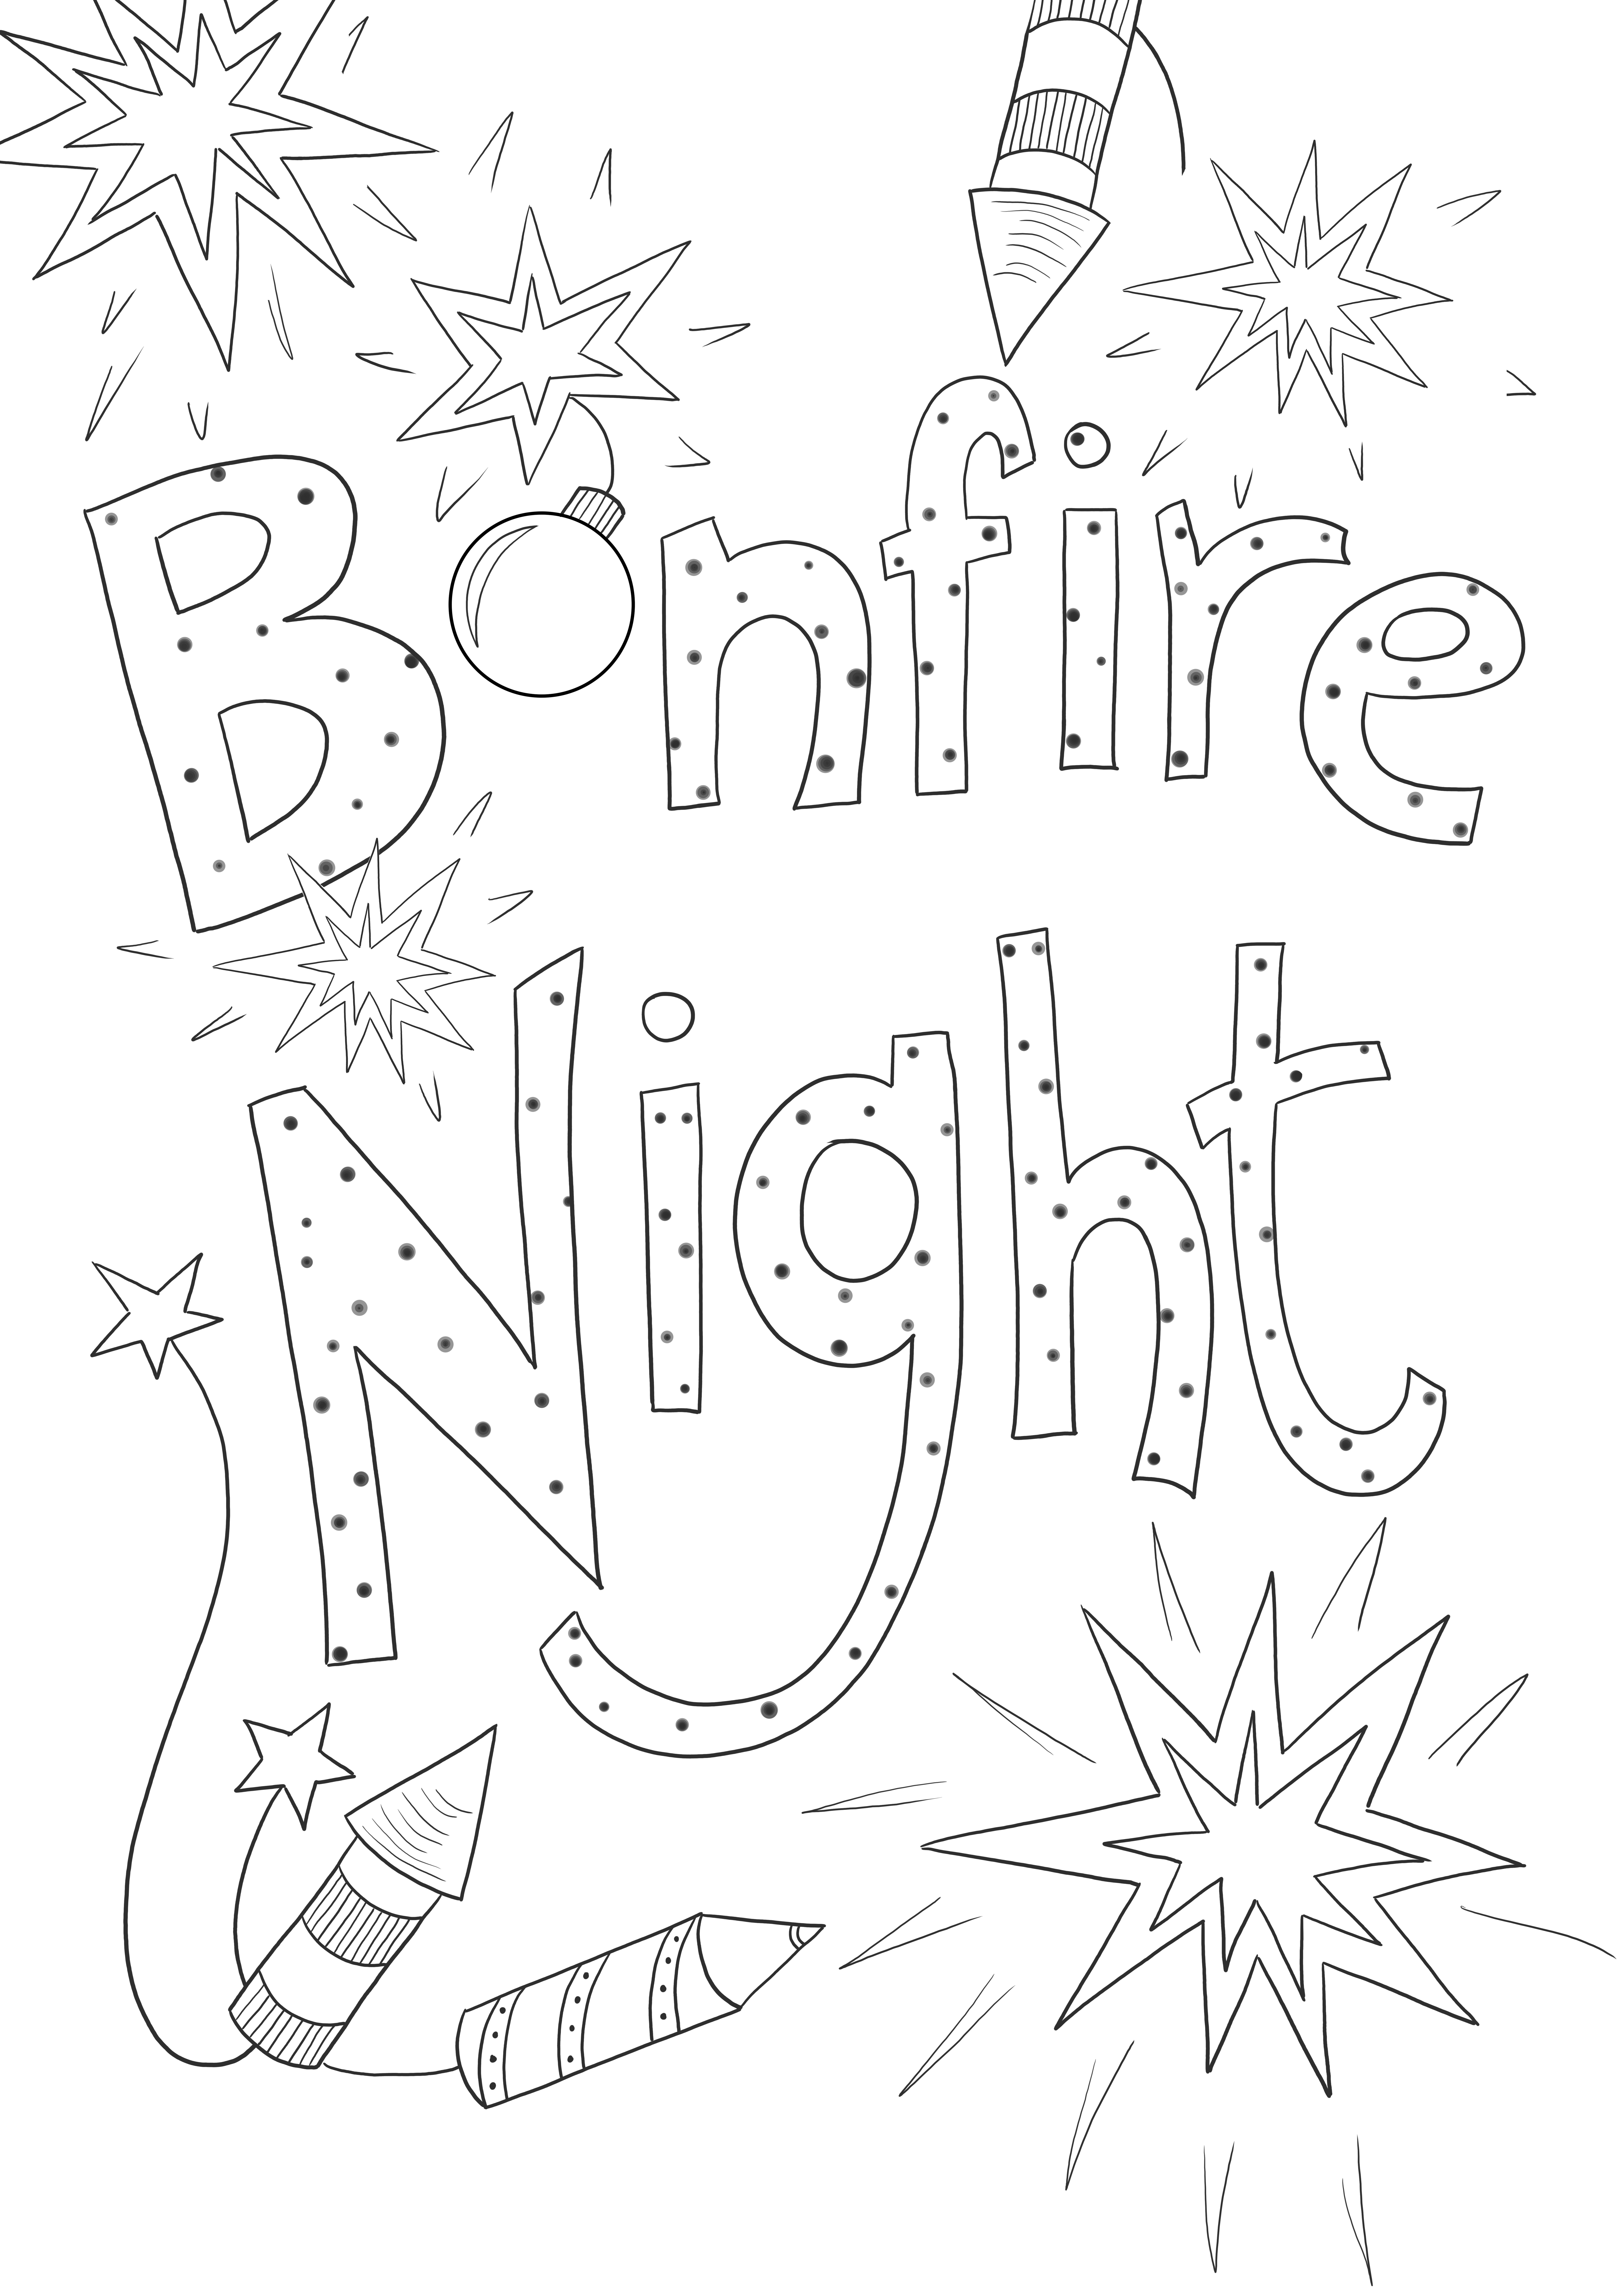 Bonfire night ilmaiseksi tulostaa kuvia ja värejä kaikenikäisille lapsille